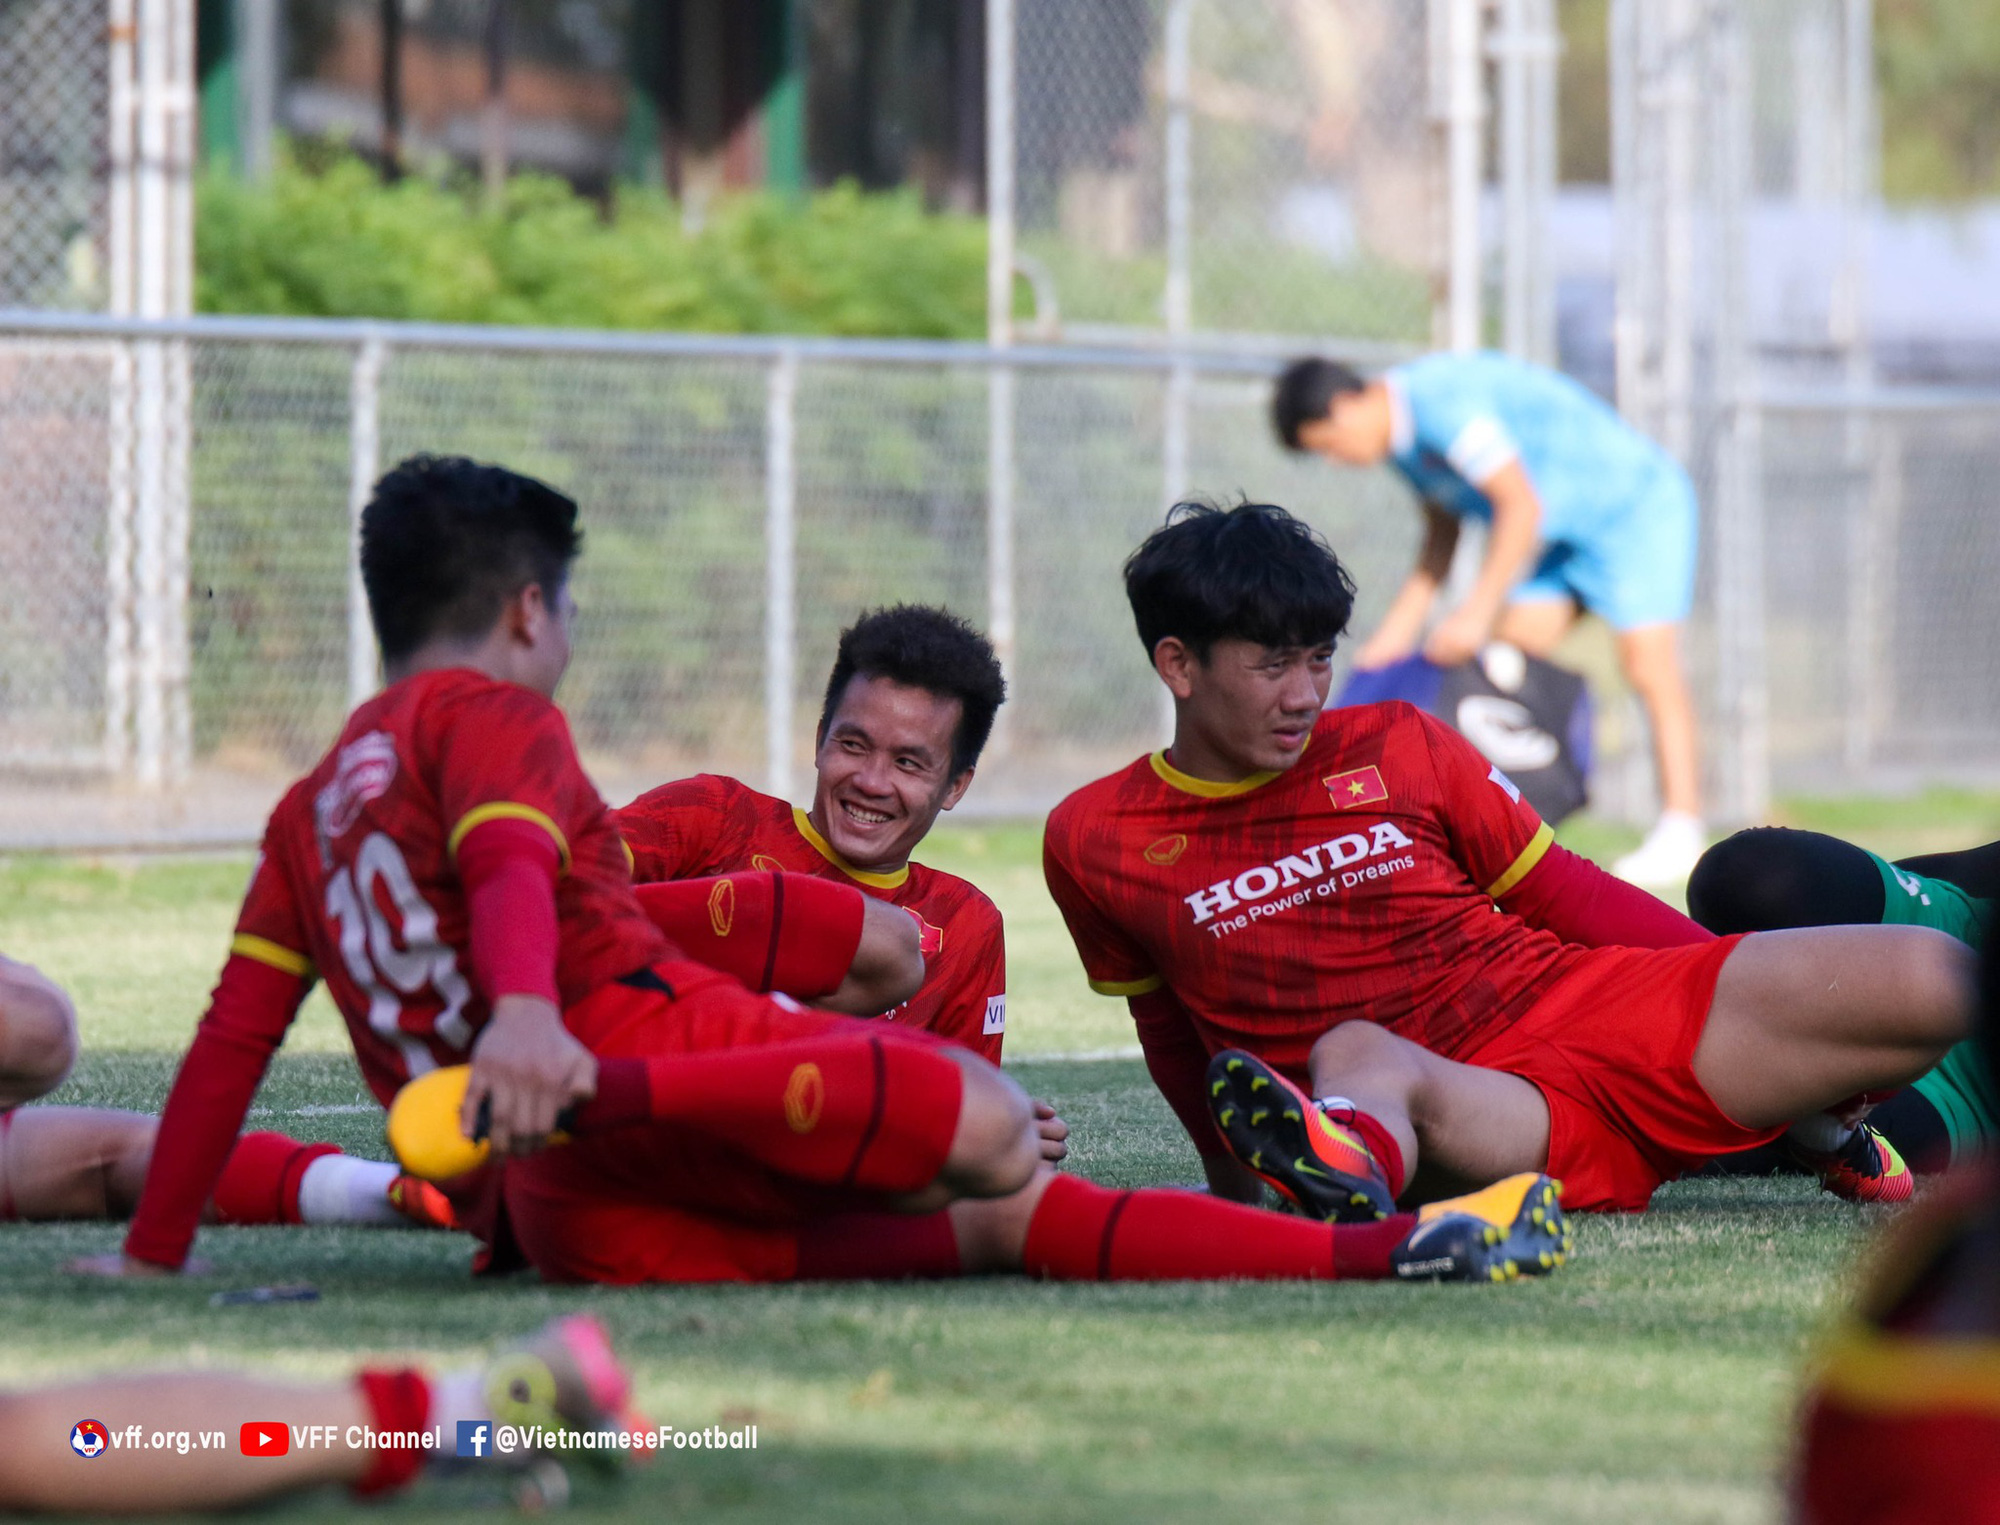 Thành Chung, Tô Văn Vũ cười tít mắt sau buổi thi đấu đối kháng của tuyển Việt Nam - Ảnh 1.